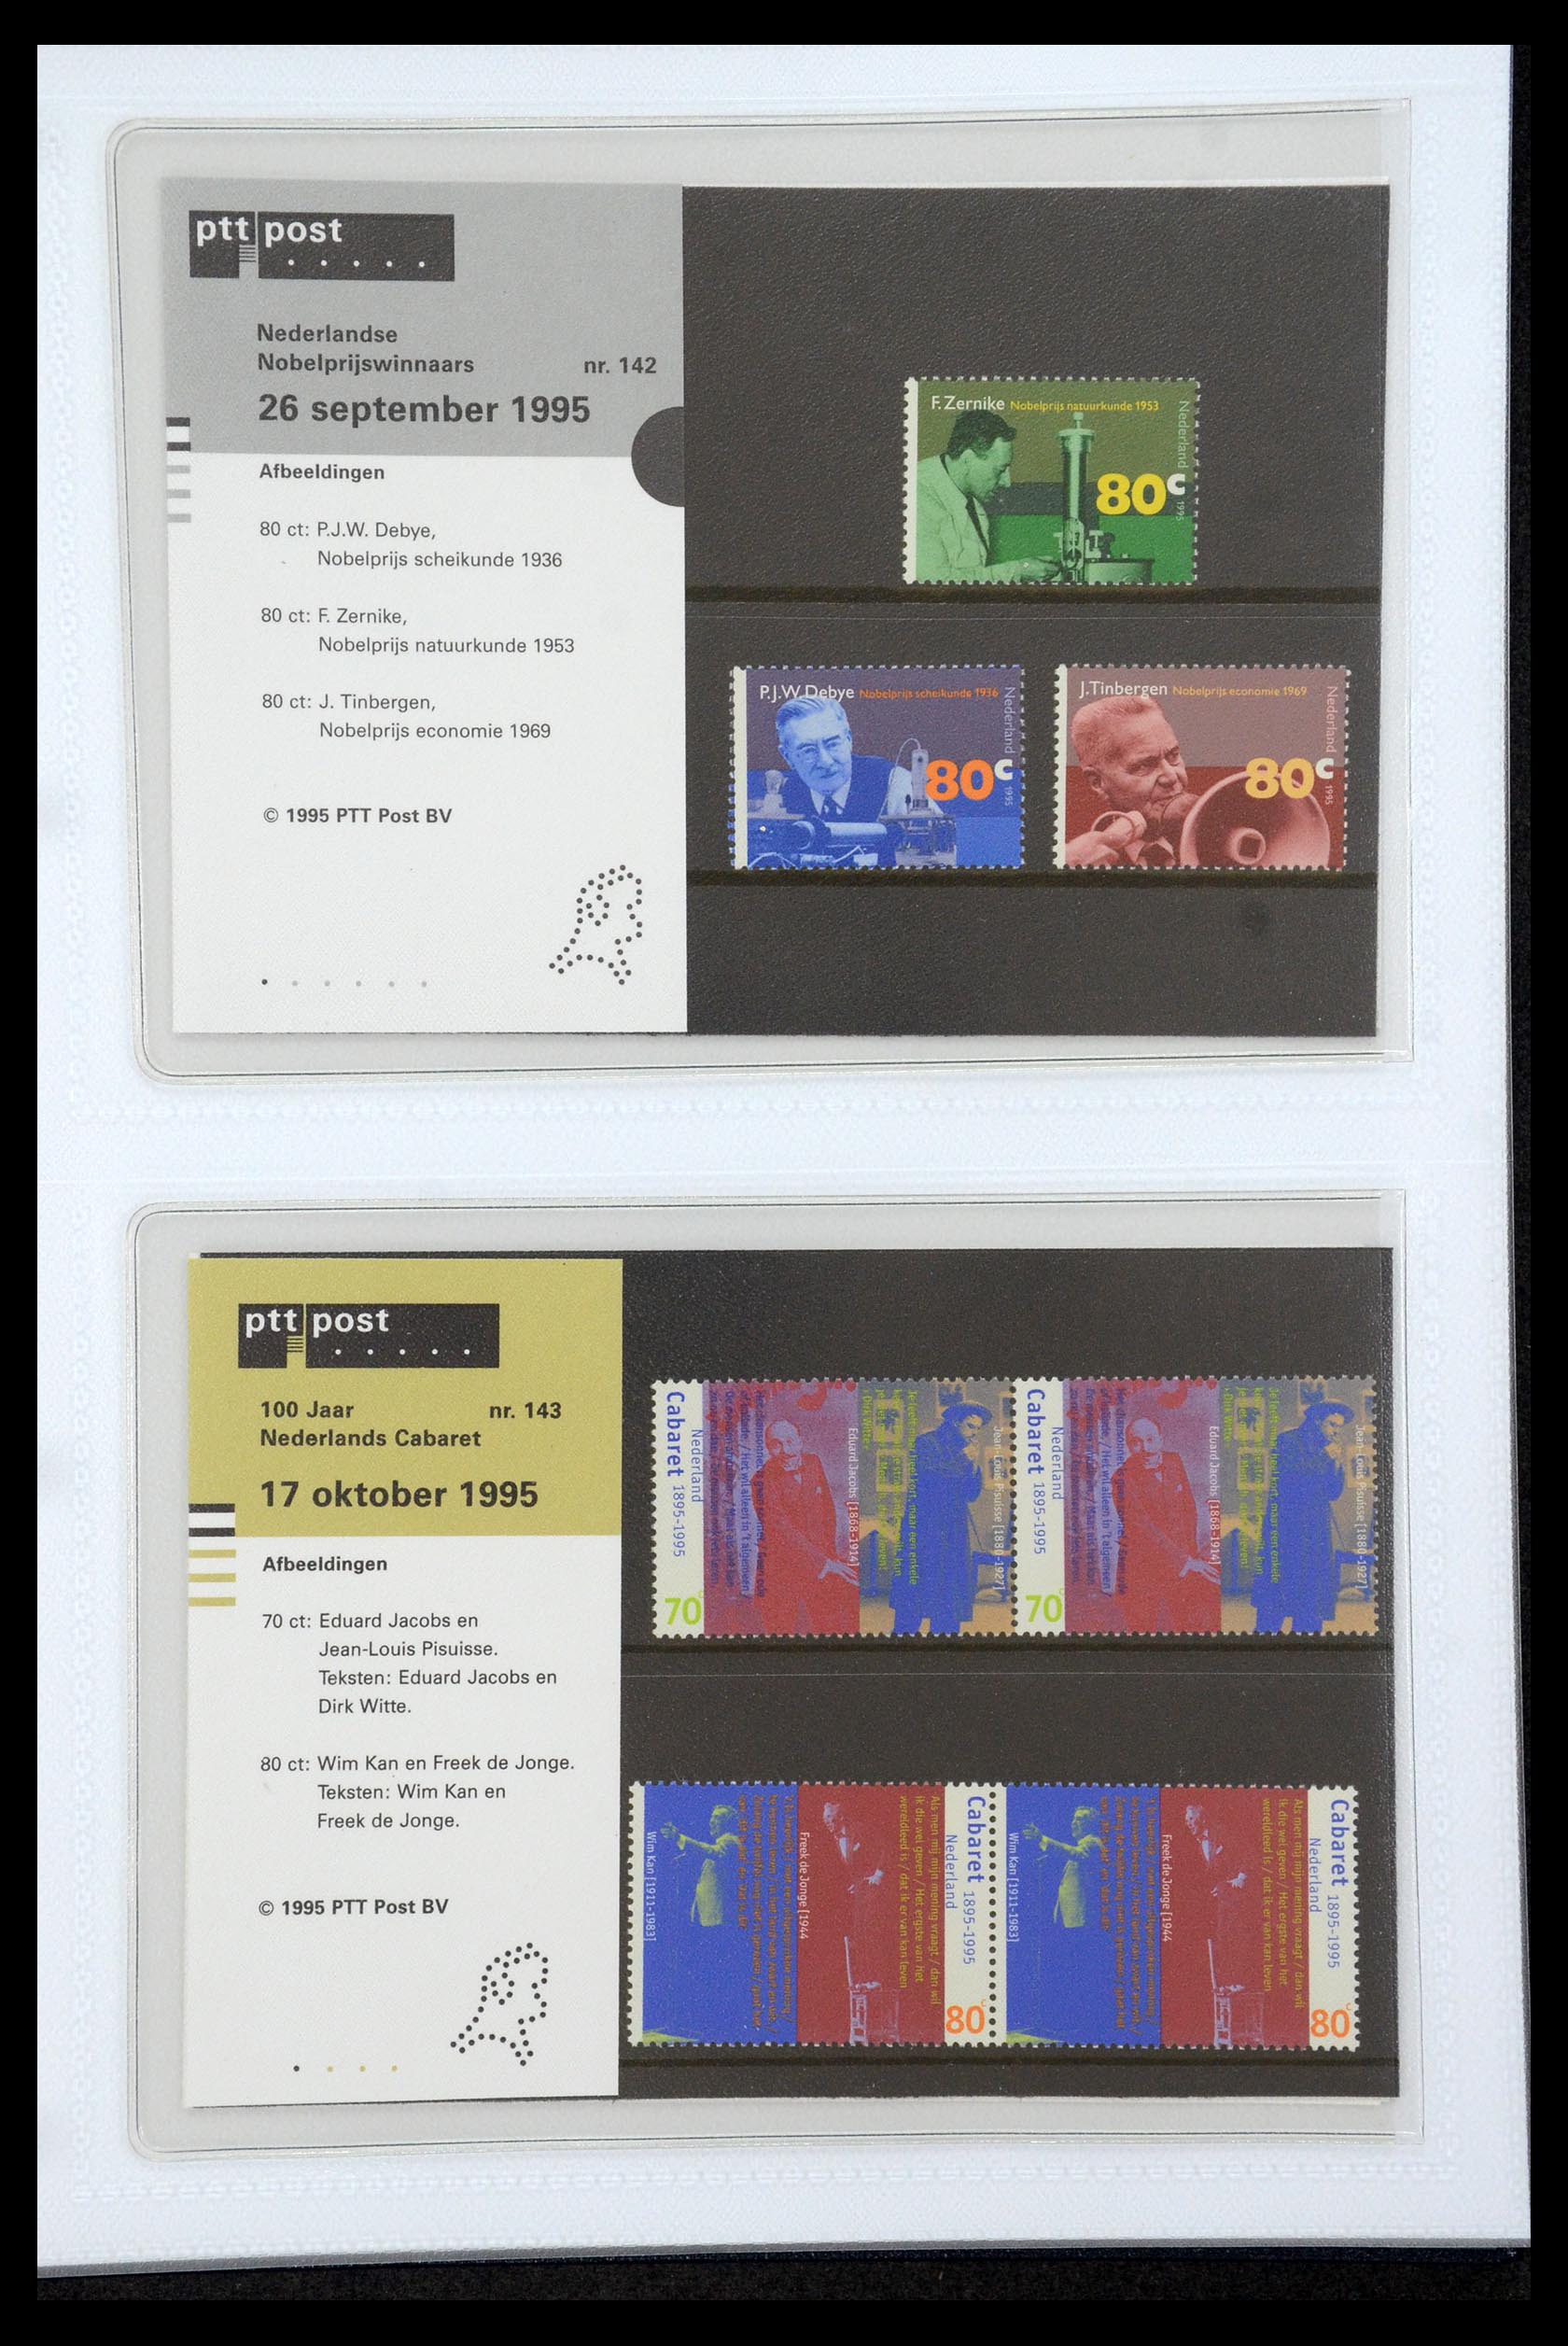 35947 074 - Stamp Collection 35947 Netherlands PTT presentation packs 1982-2019!